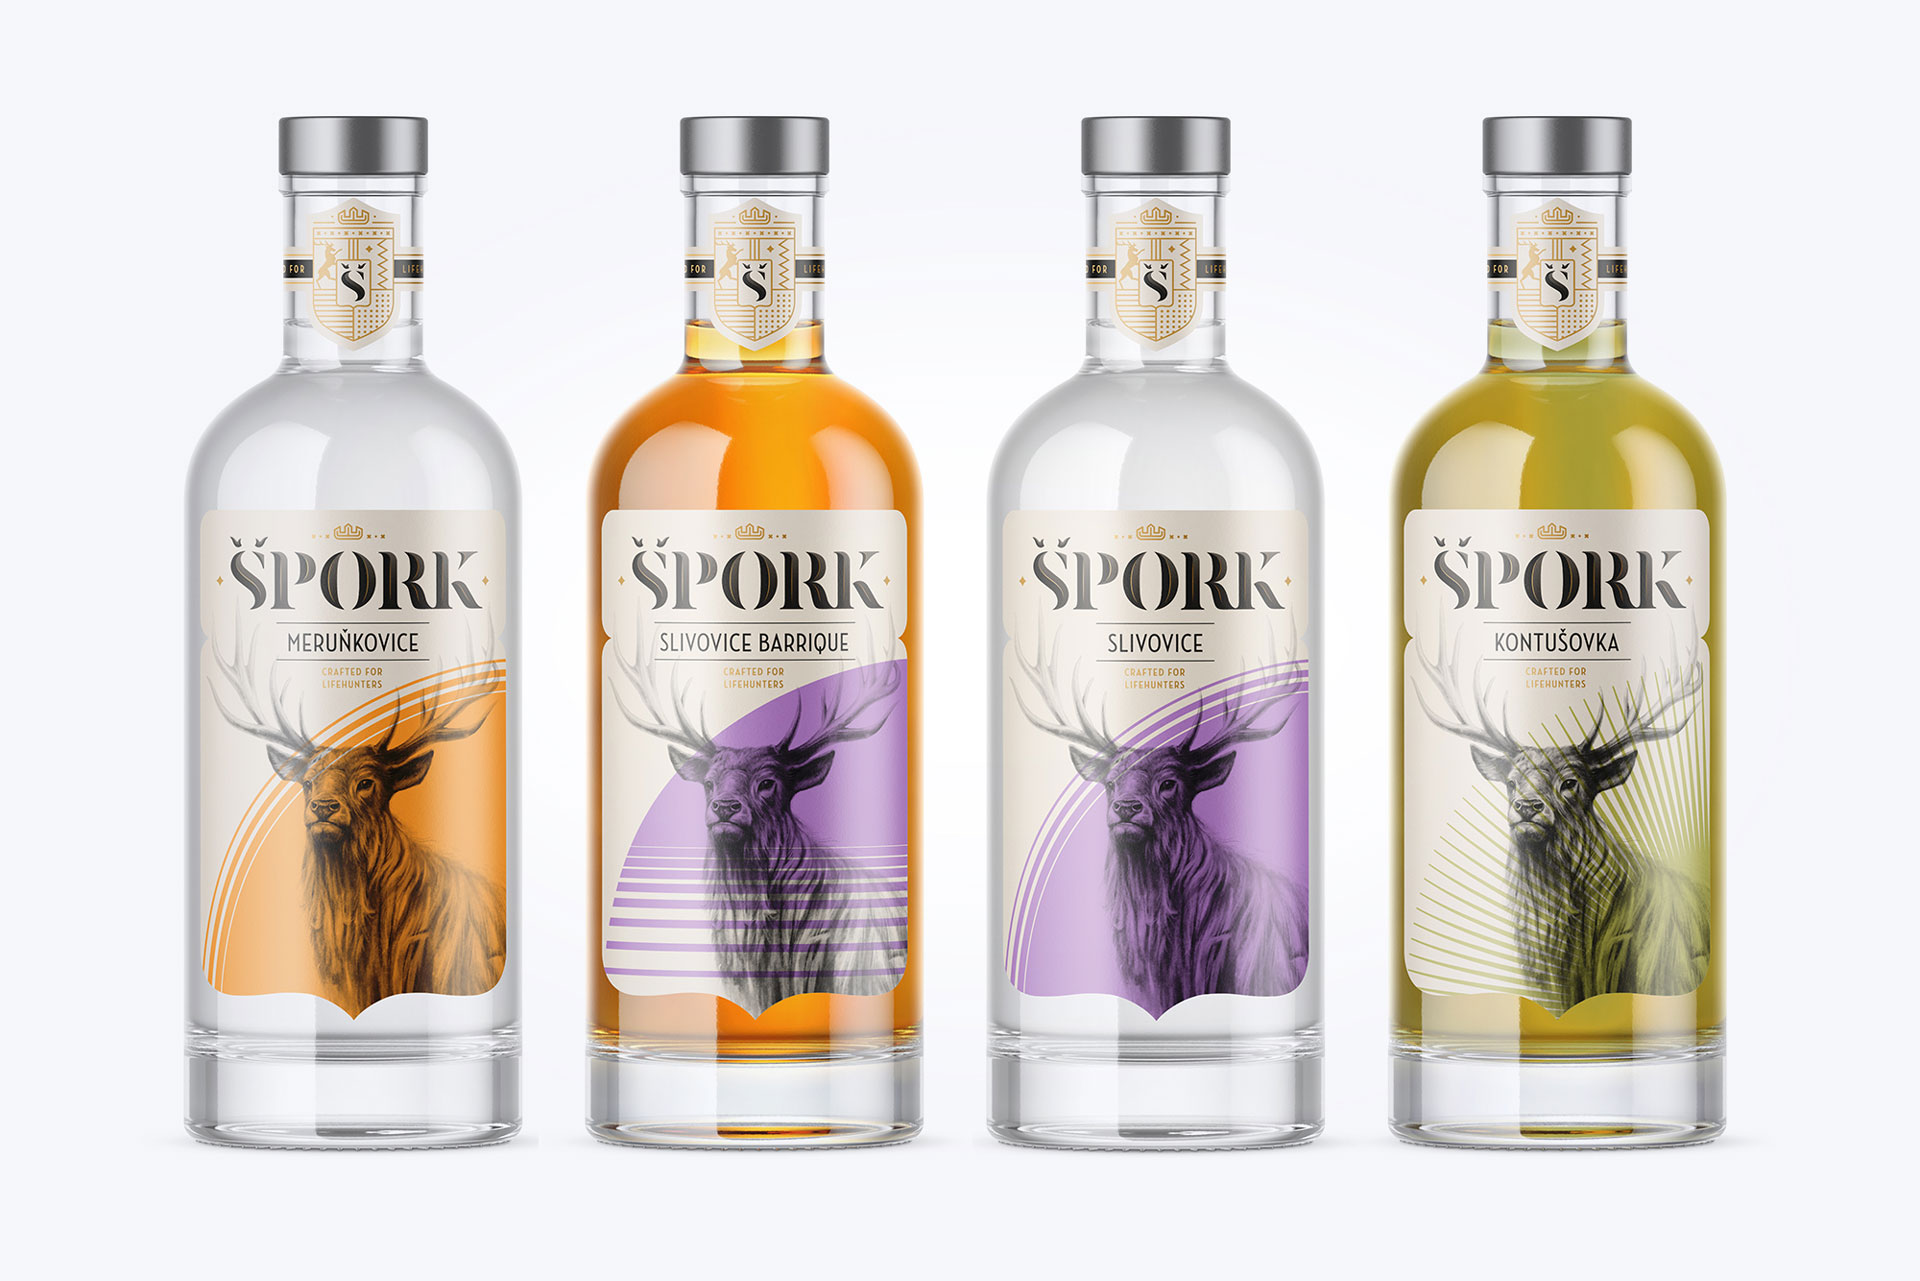 Špork - Spirits for Lifehunters | NYX Marcom Awards